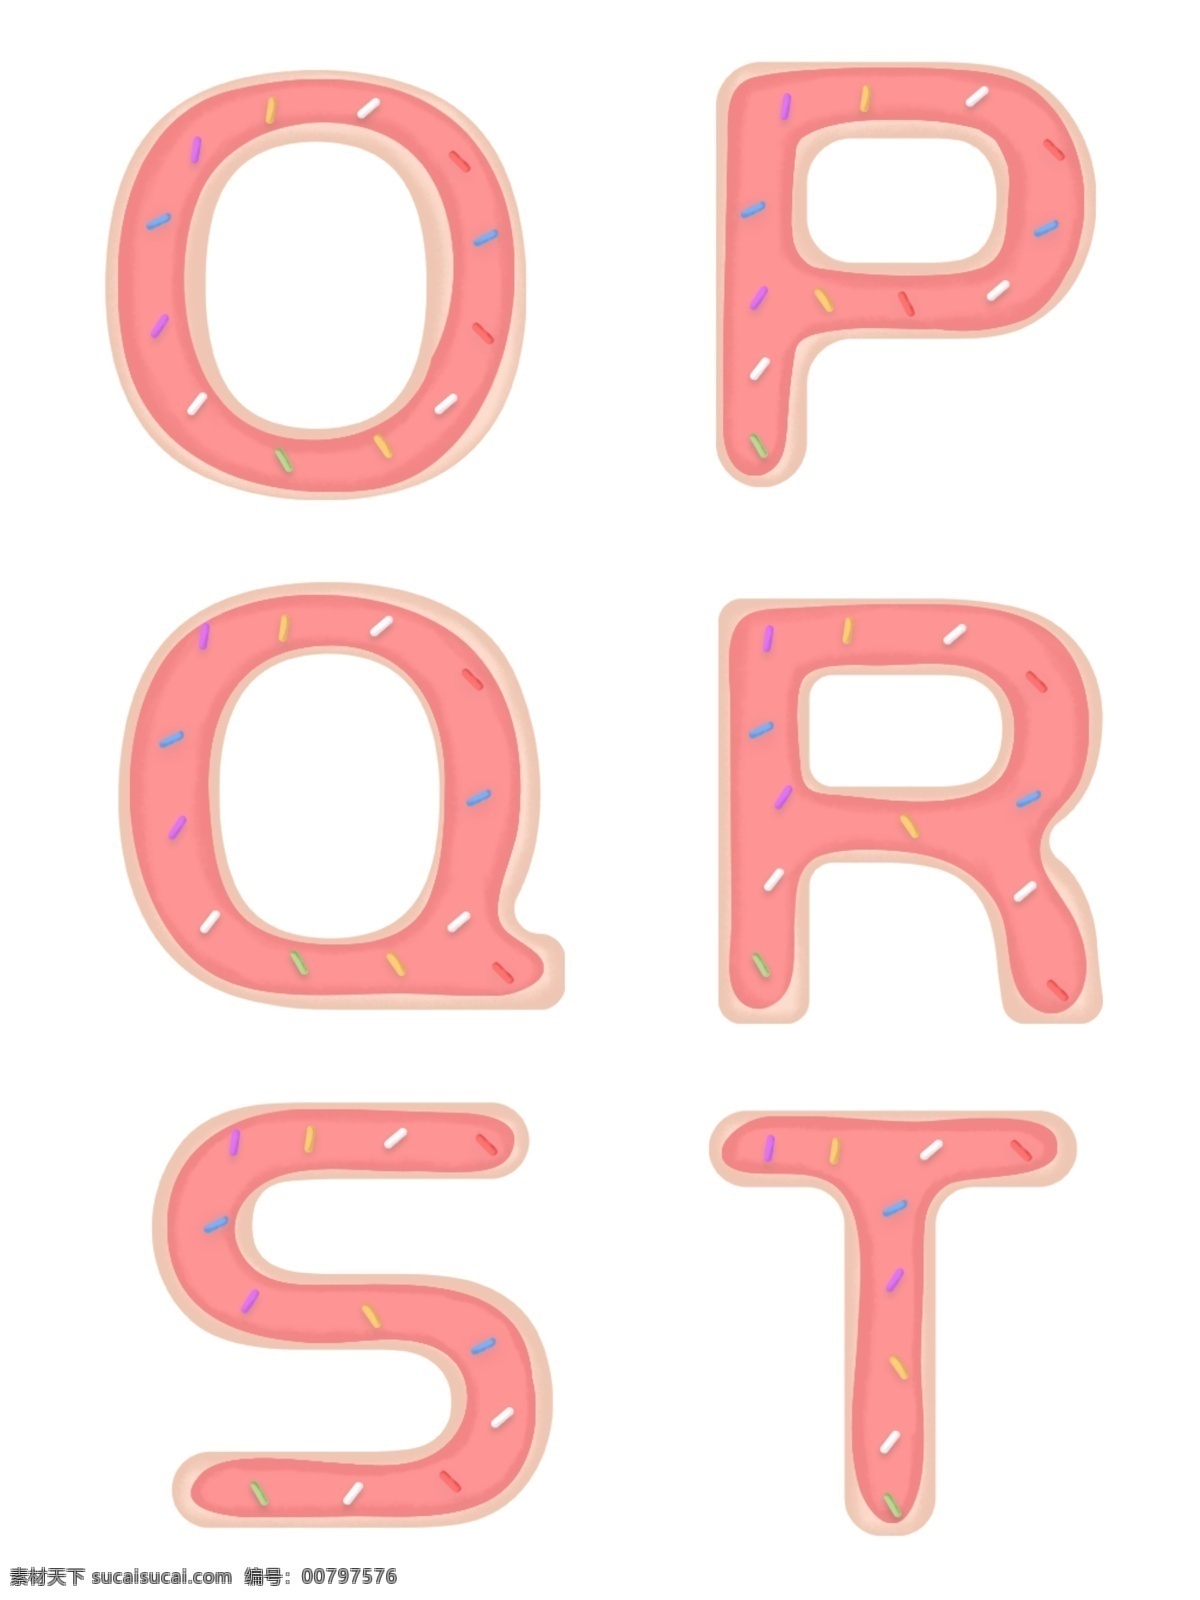 手绘 个性 糖衣 英文 字母 元素 糖果字母 可爱字母 饼干字母 个性字母 创意字母 糖衣字母 节日英文字母